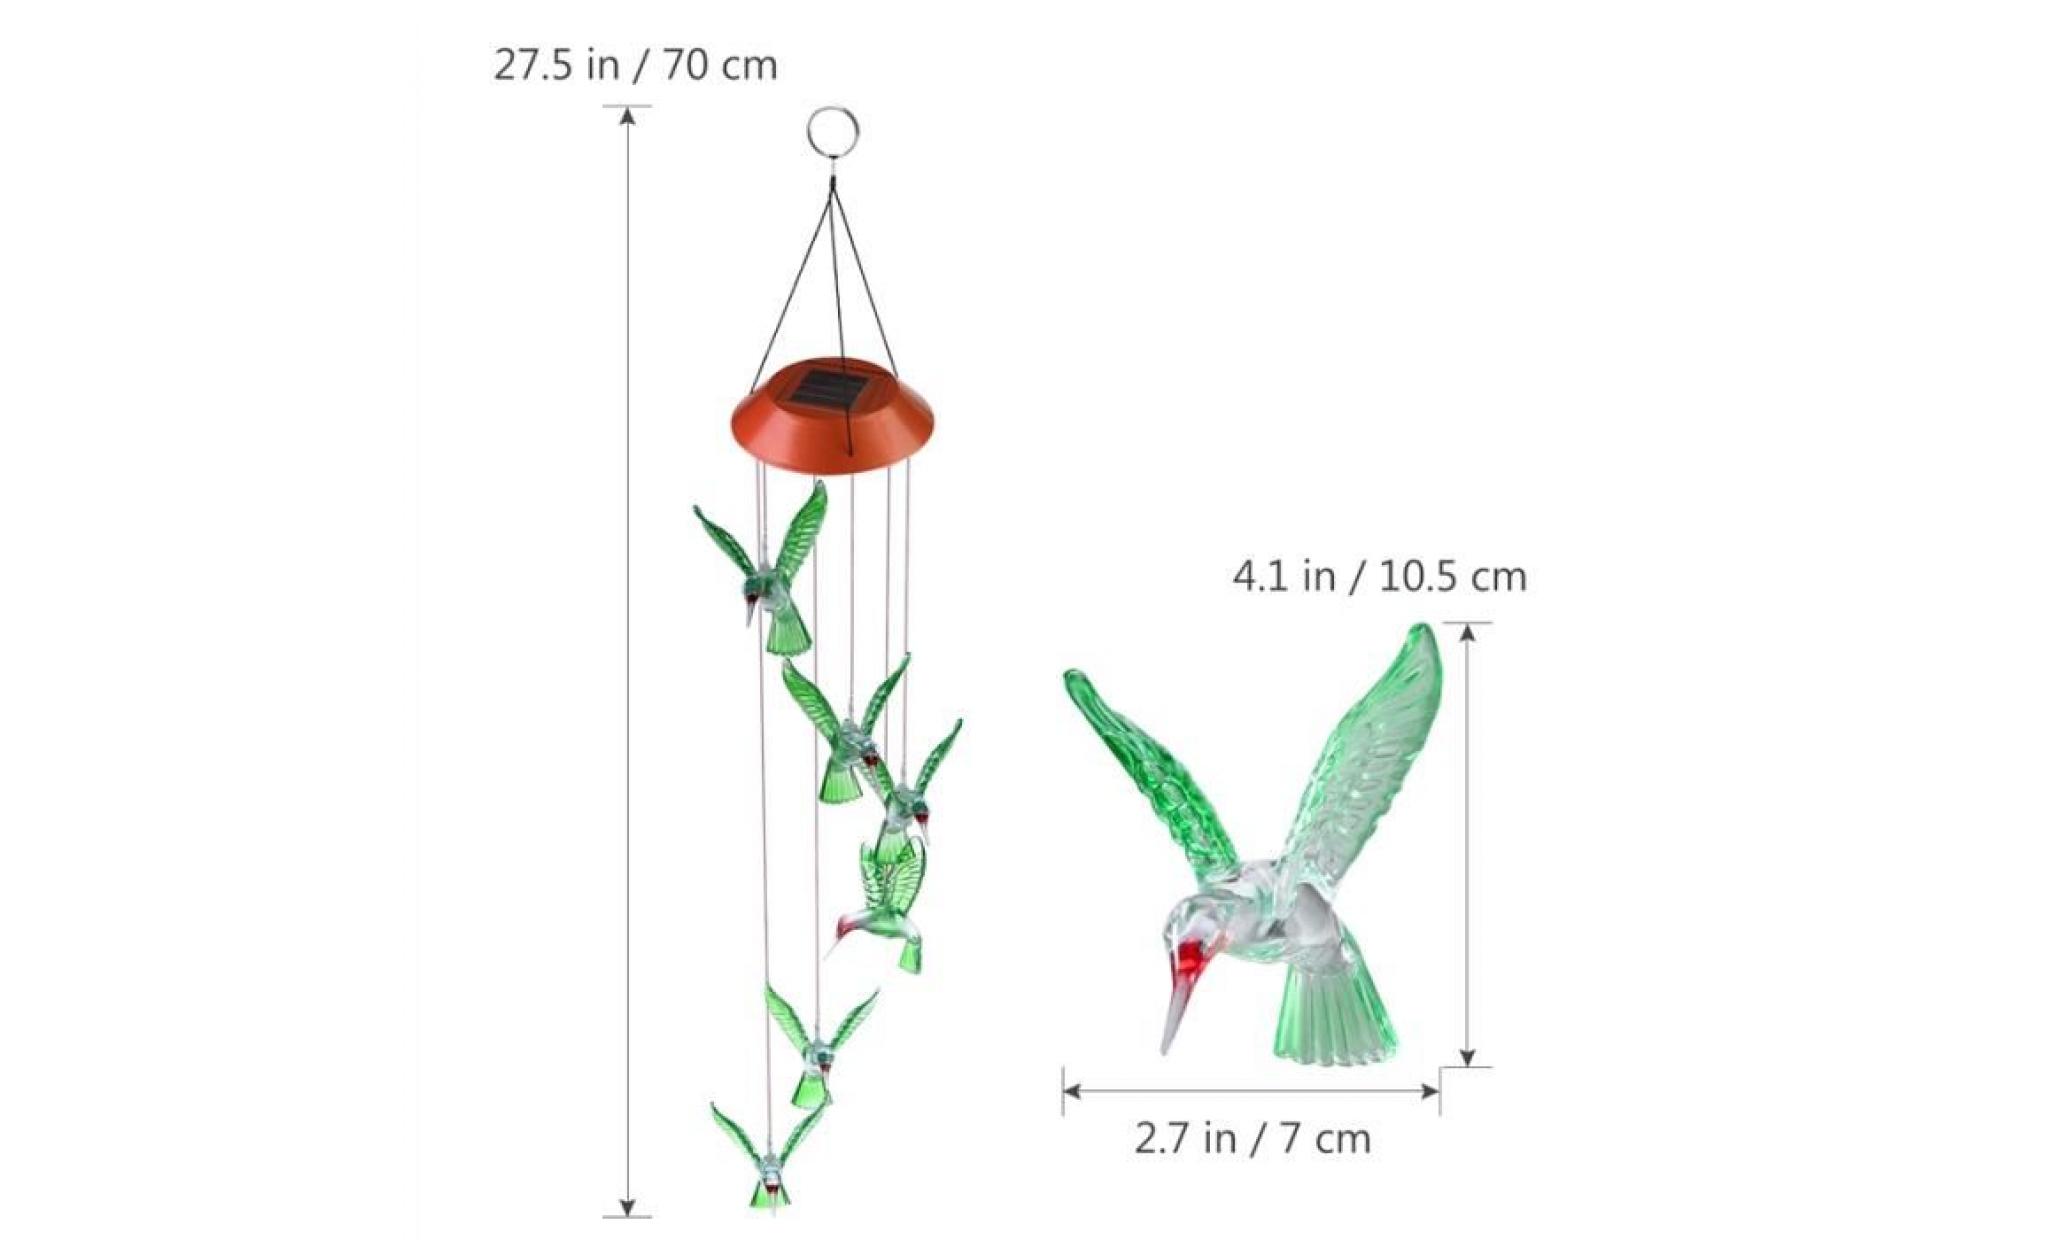 yunlights hummingbird wind chimes led solaire mobile wind chime changement de couleur lampe capteur de vent automatique de la pas cher